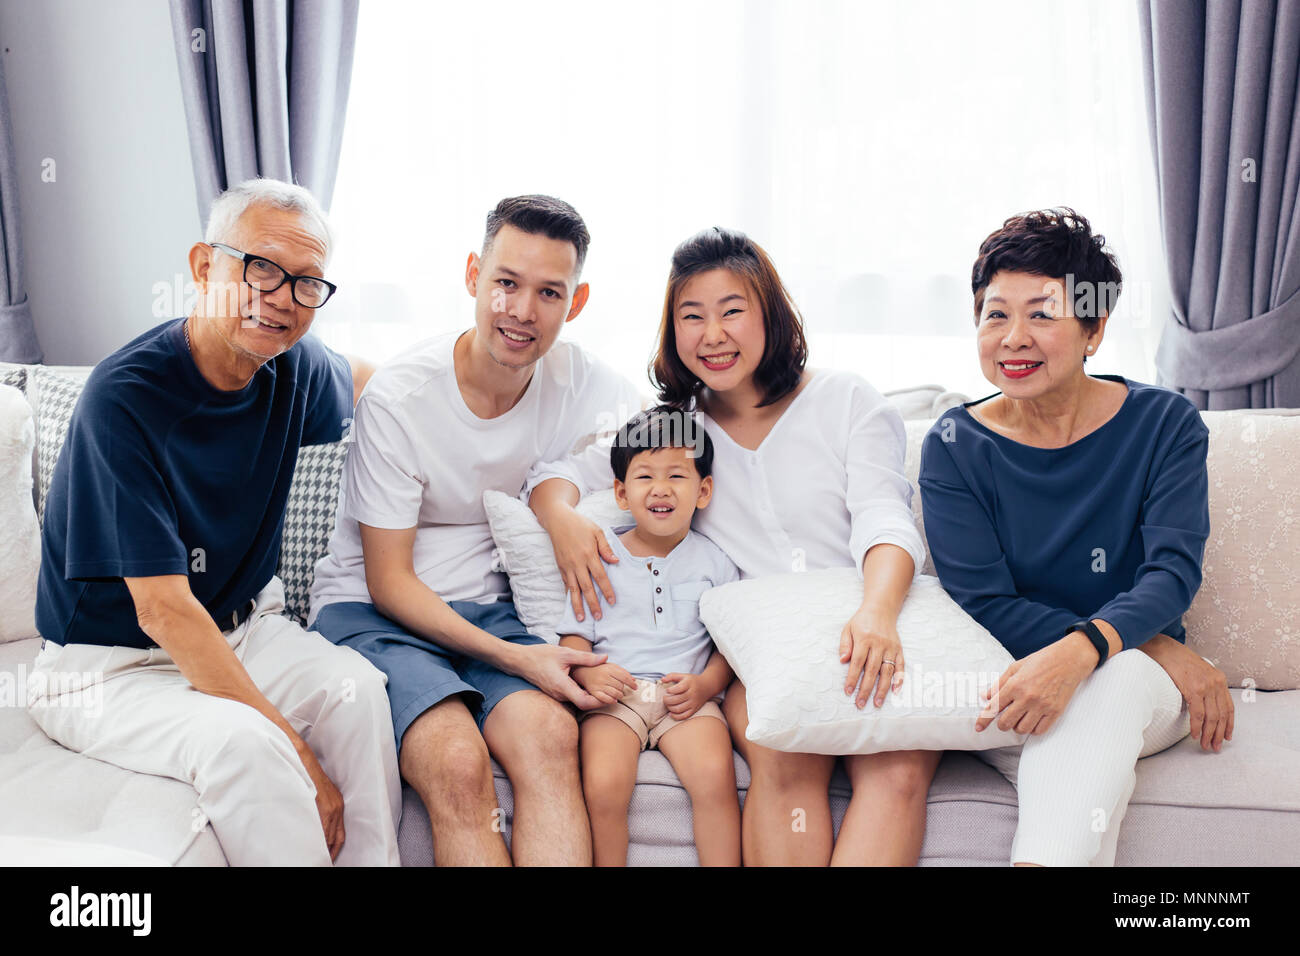 Gerne Asiatische erweiterte Familie auf dem Sofa sitzen zusammen, für die Gruppe Fotos posiert Stockfoto